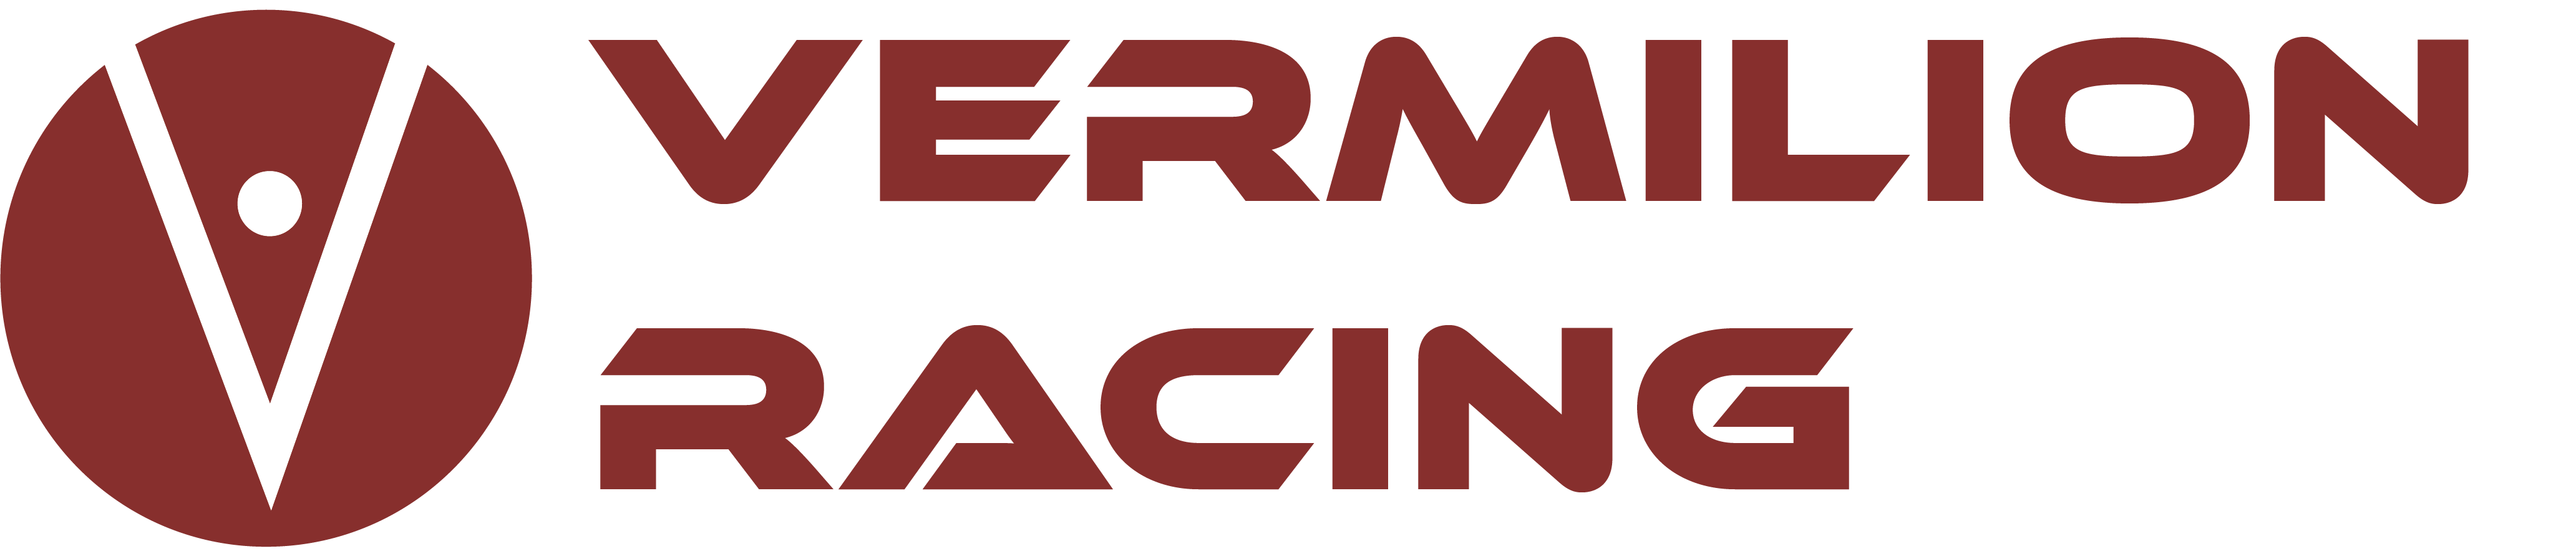 Vermilion Racing